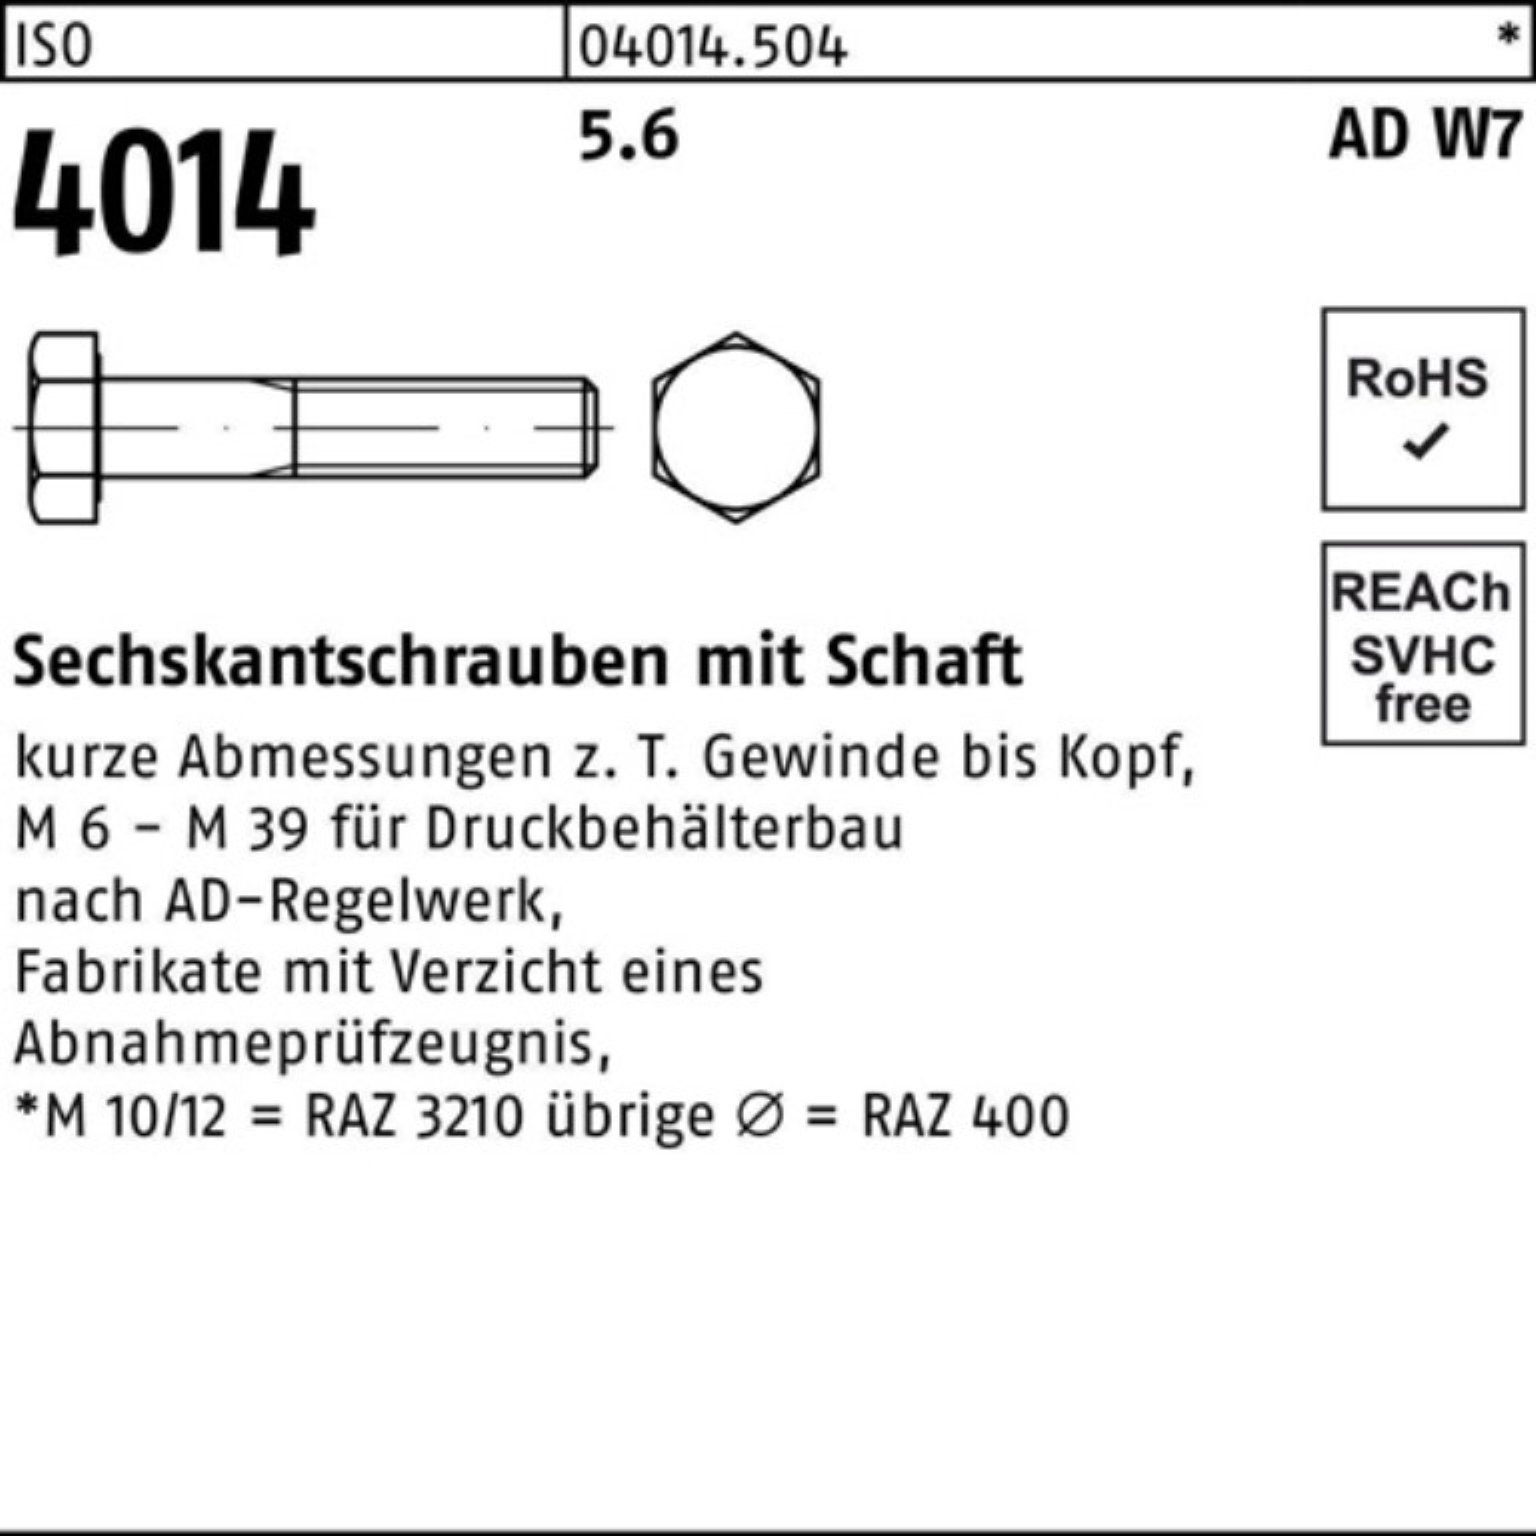 4014 M39x 100er 5.6 Sechskantschraube Pack Bufab Stück ISO Schaft W7 150 1 Sechskantschraube